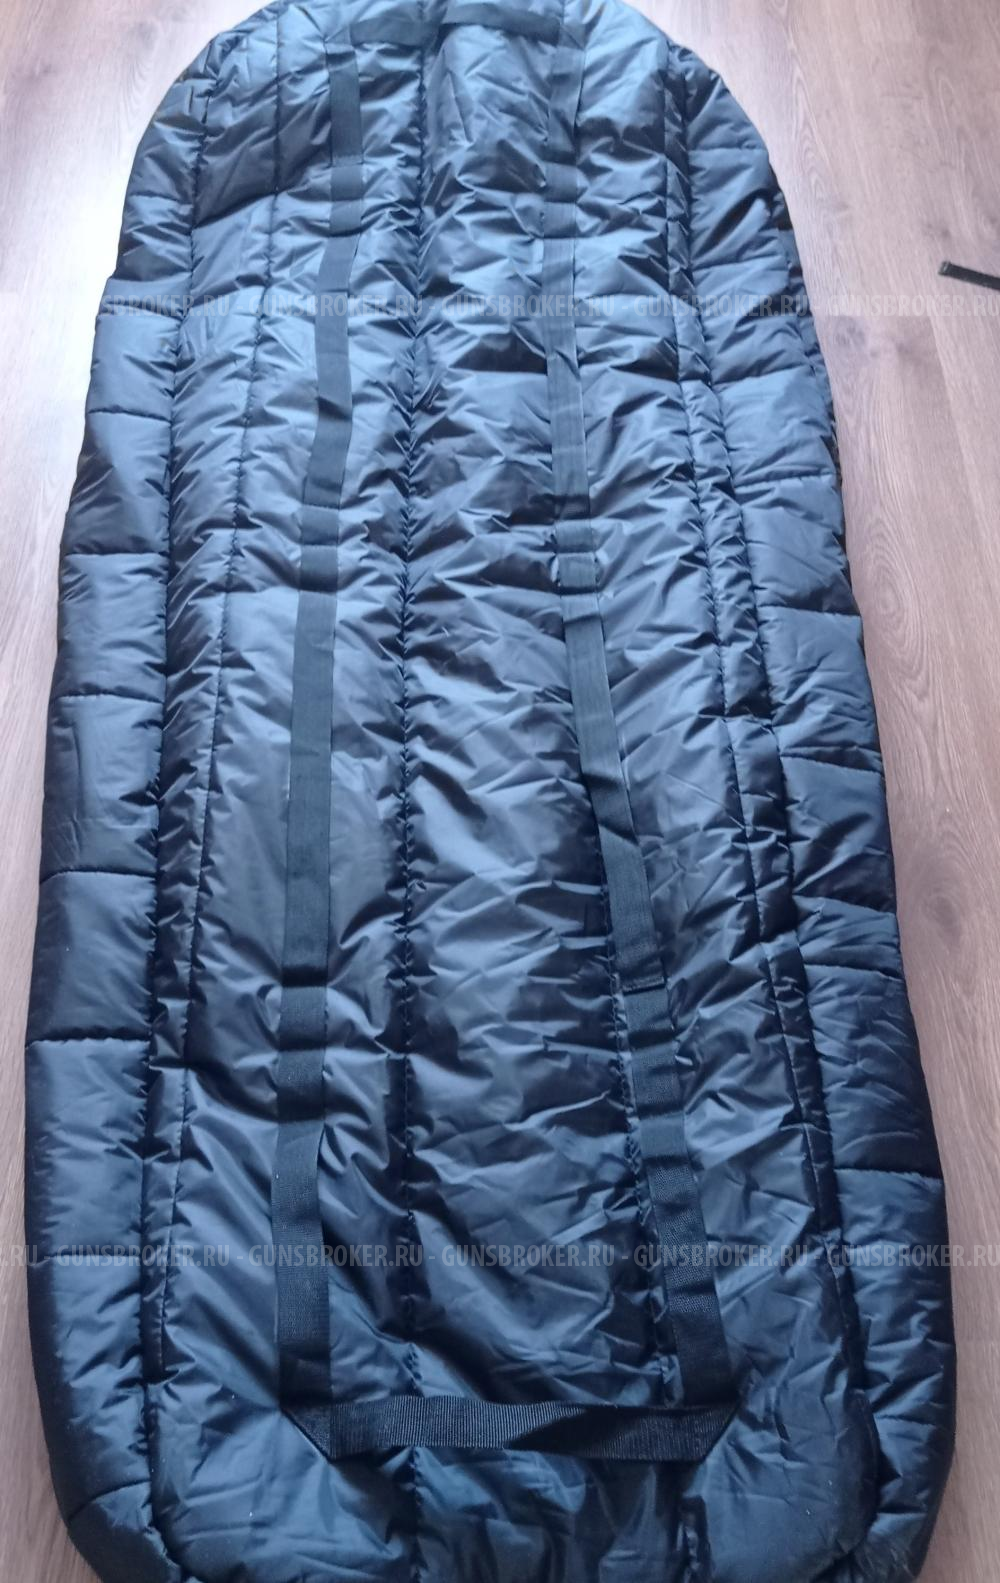 Спальный мешок зимний -40 с системой эвакуации - хит